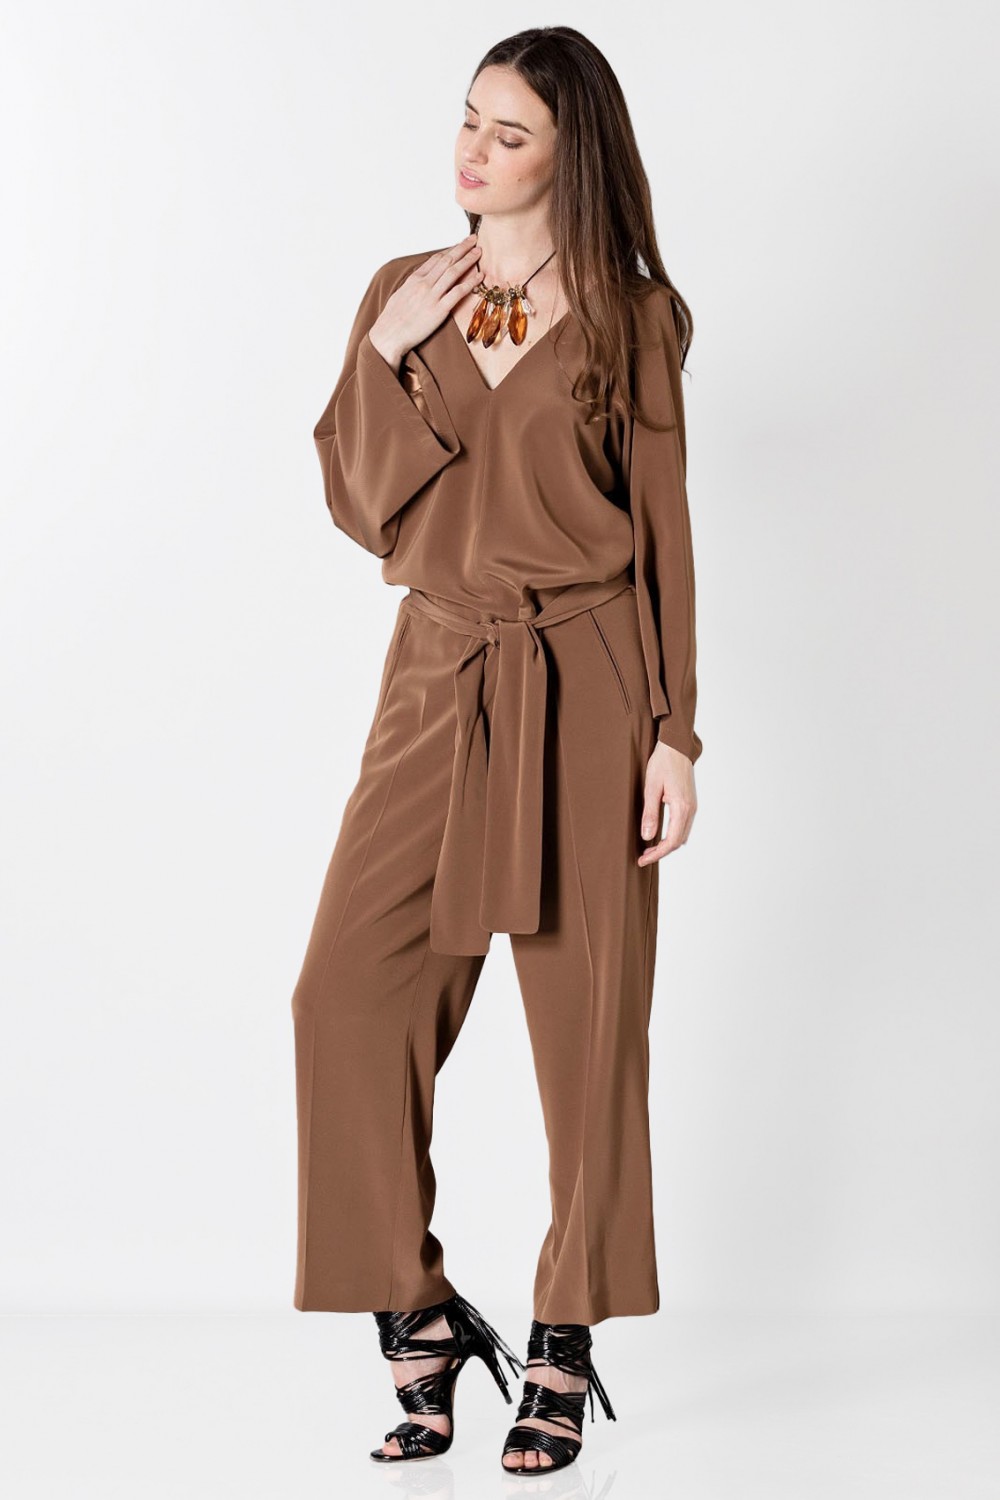 Vendita Abbigliamento Usato FIrmato - Long sleeve jumpsuit - Albino - Drexcode -7